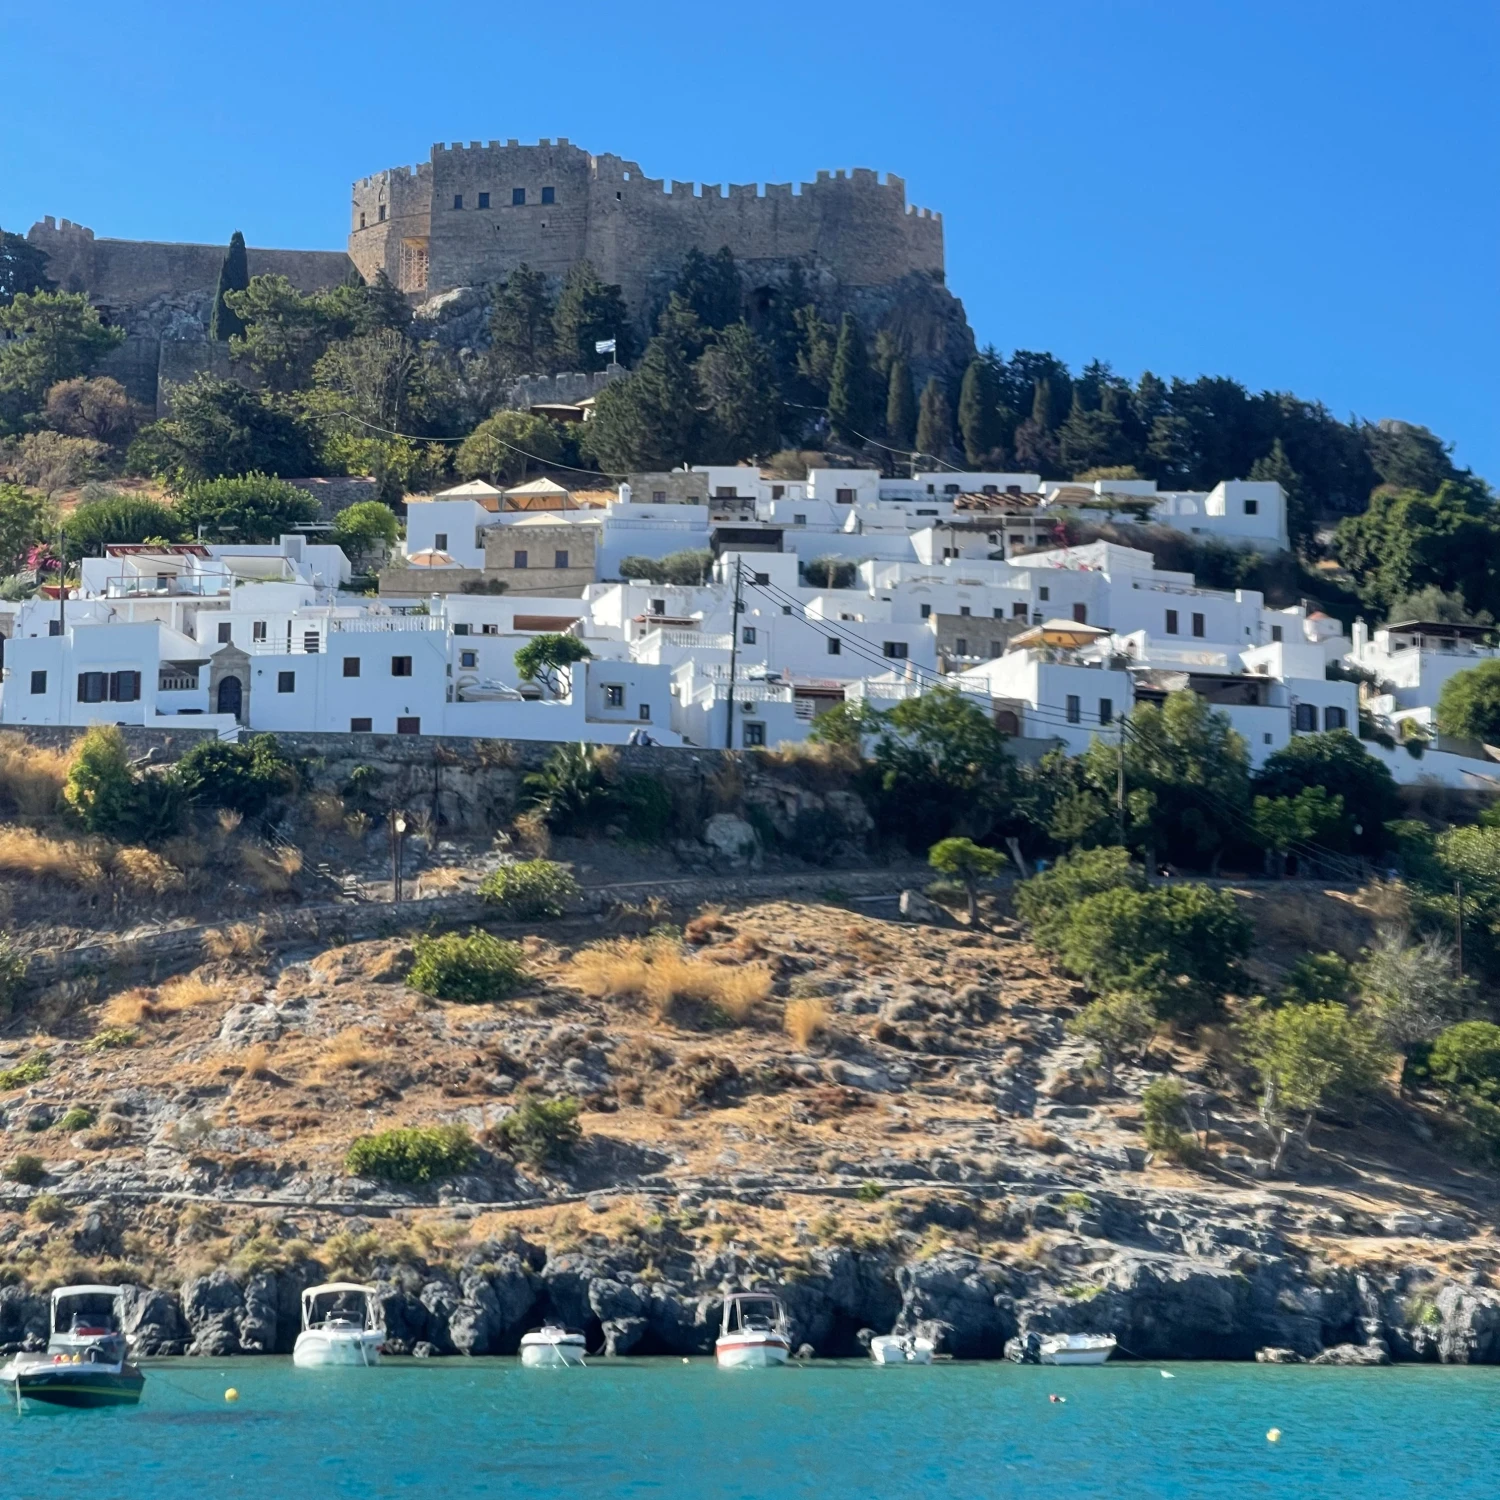 Travel Advisor Katelyn Hirt's photo of the white houses in Greece.